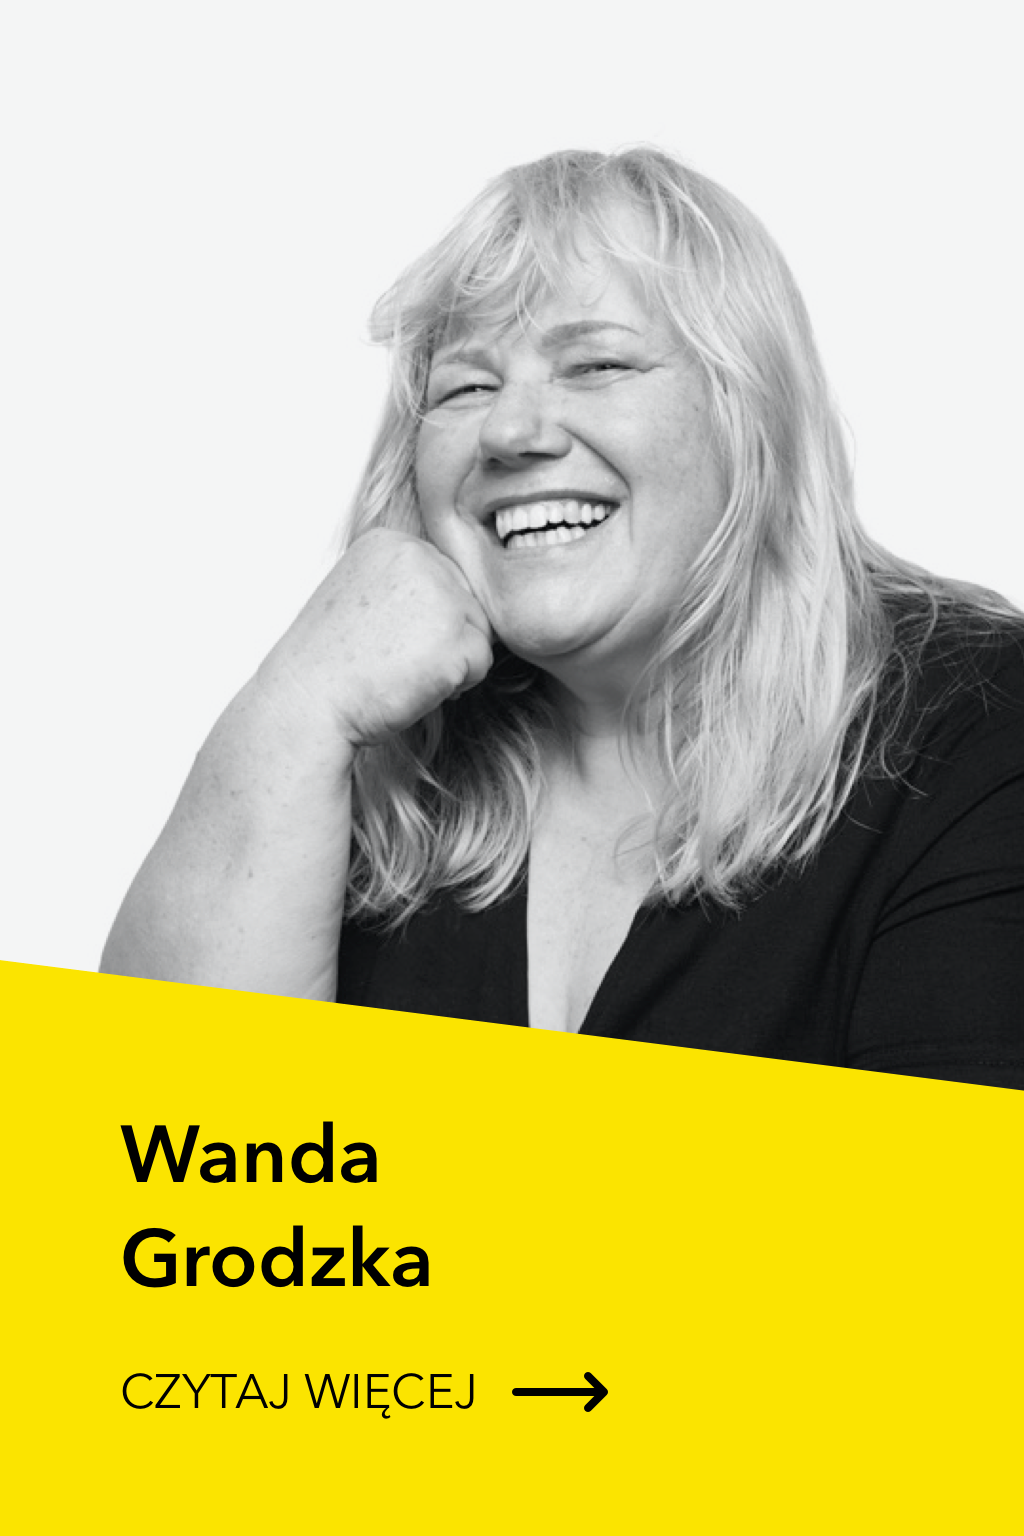 Wanda Grodzka